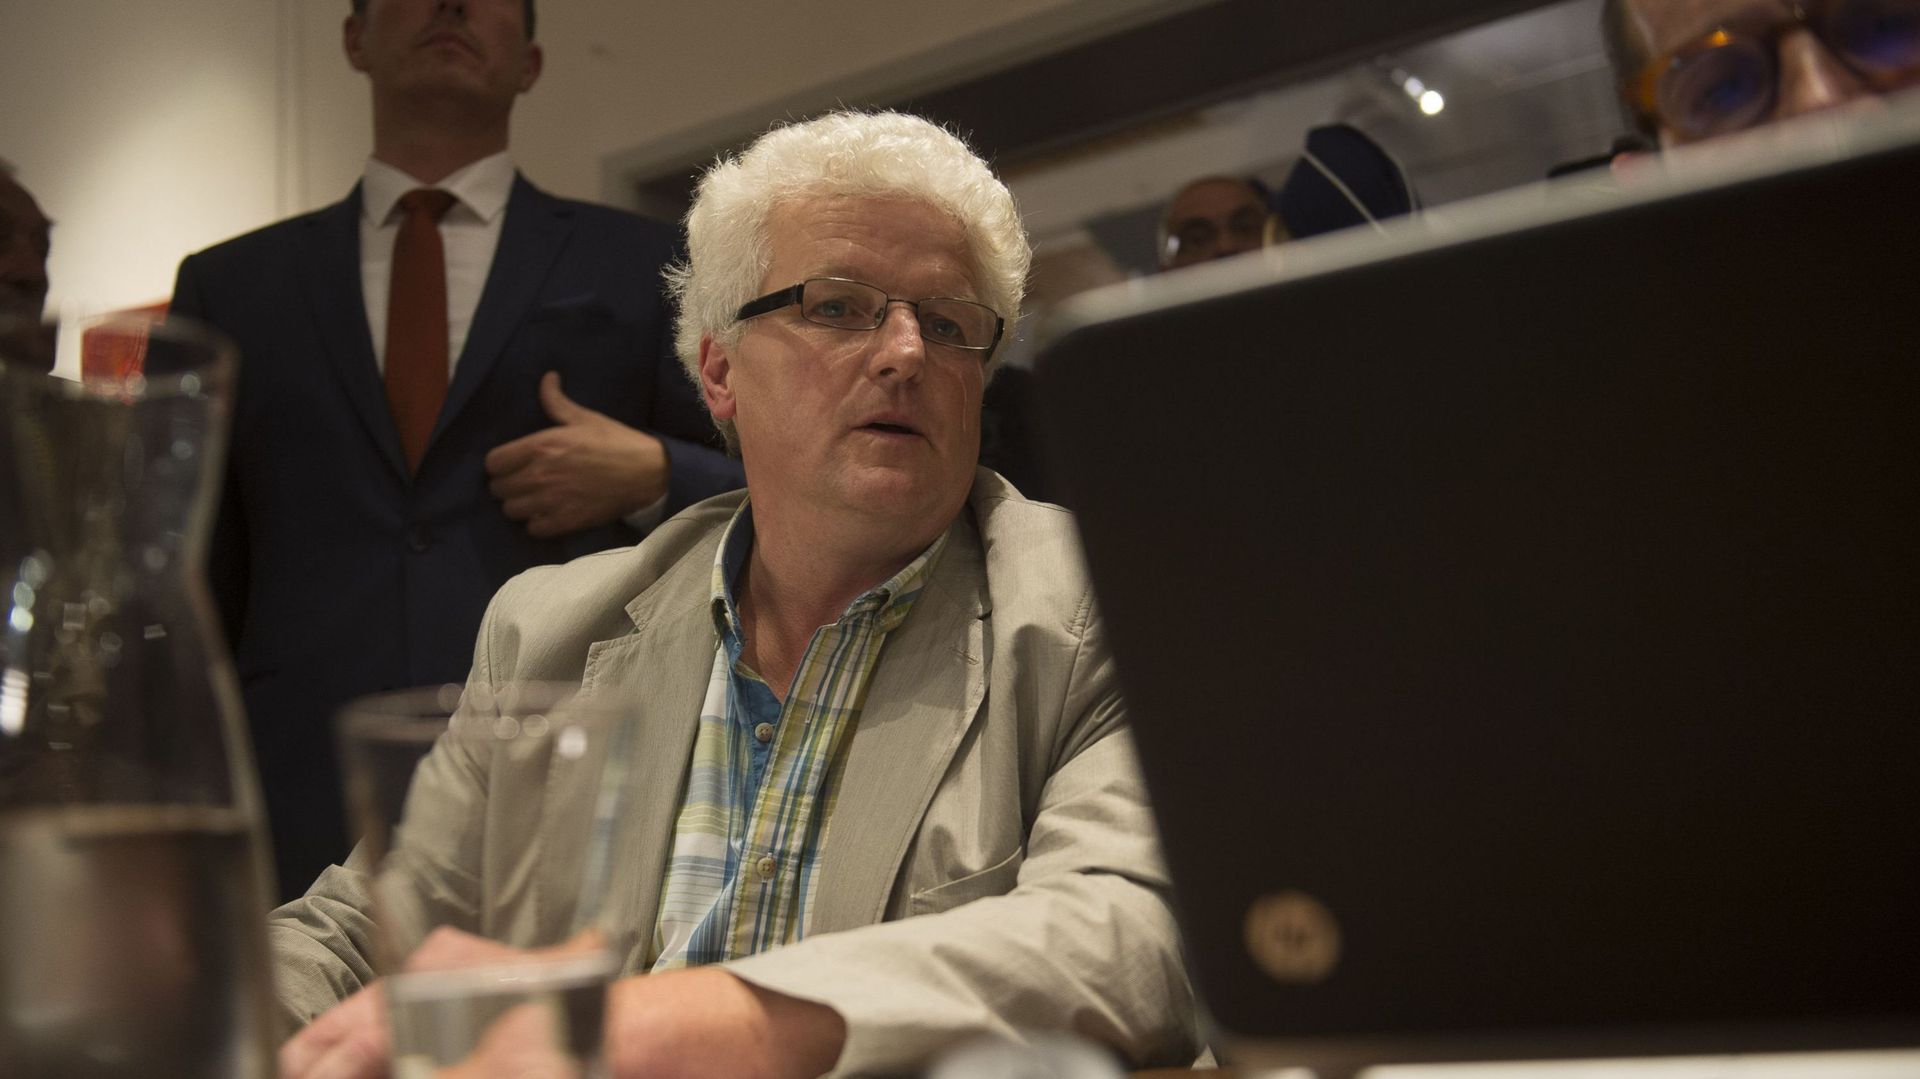 Le Conseil communal tourne court à Linkebeek faute de quorum